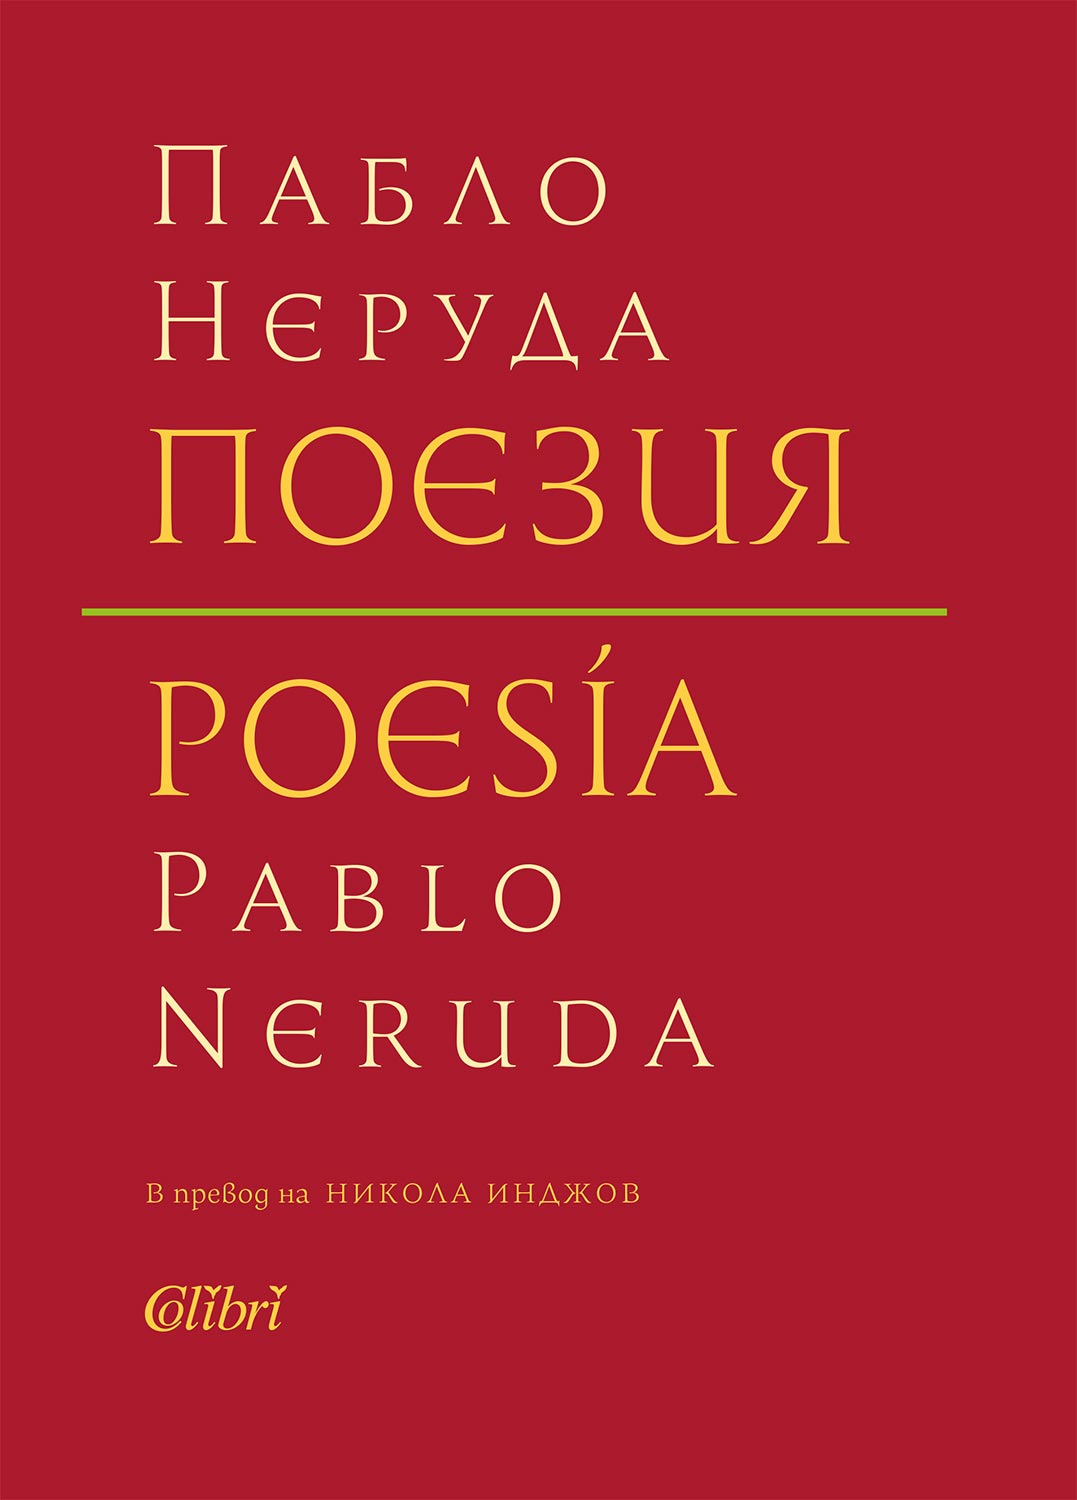 стихотворения на Пабло Неруда, събрани в ново двуезично издание